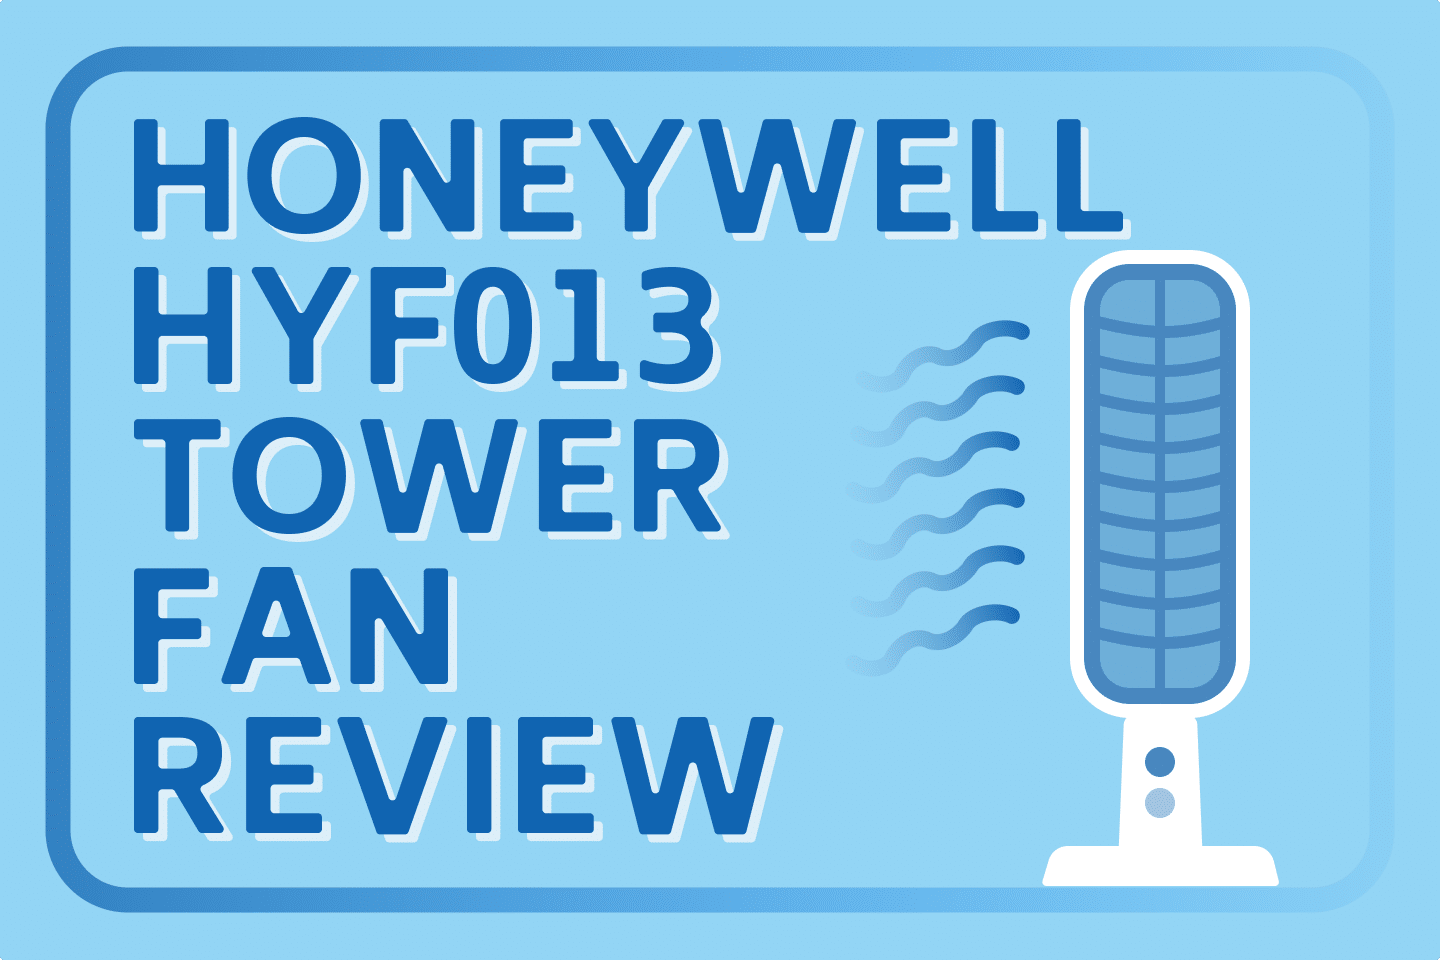 Honeywell HYF013 Tower Fan Review